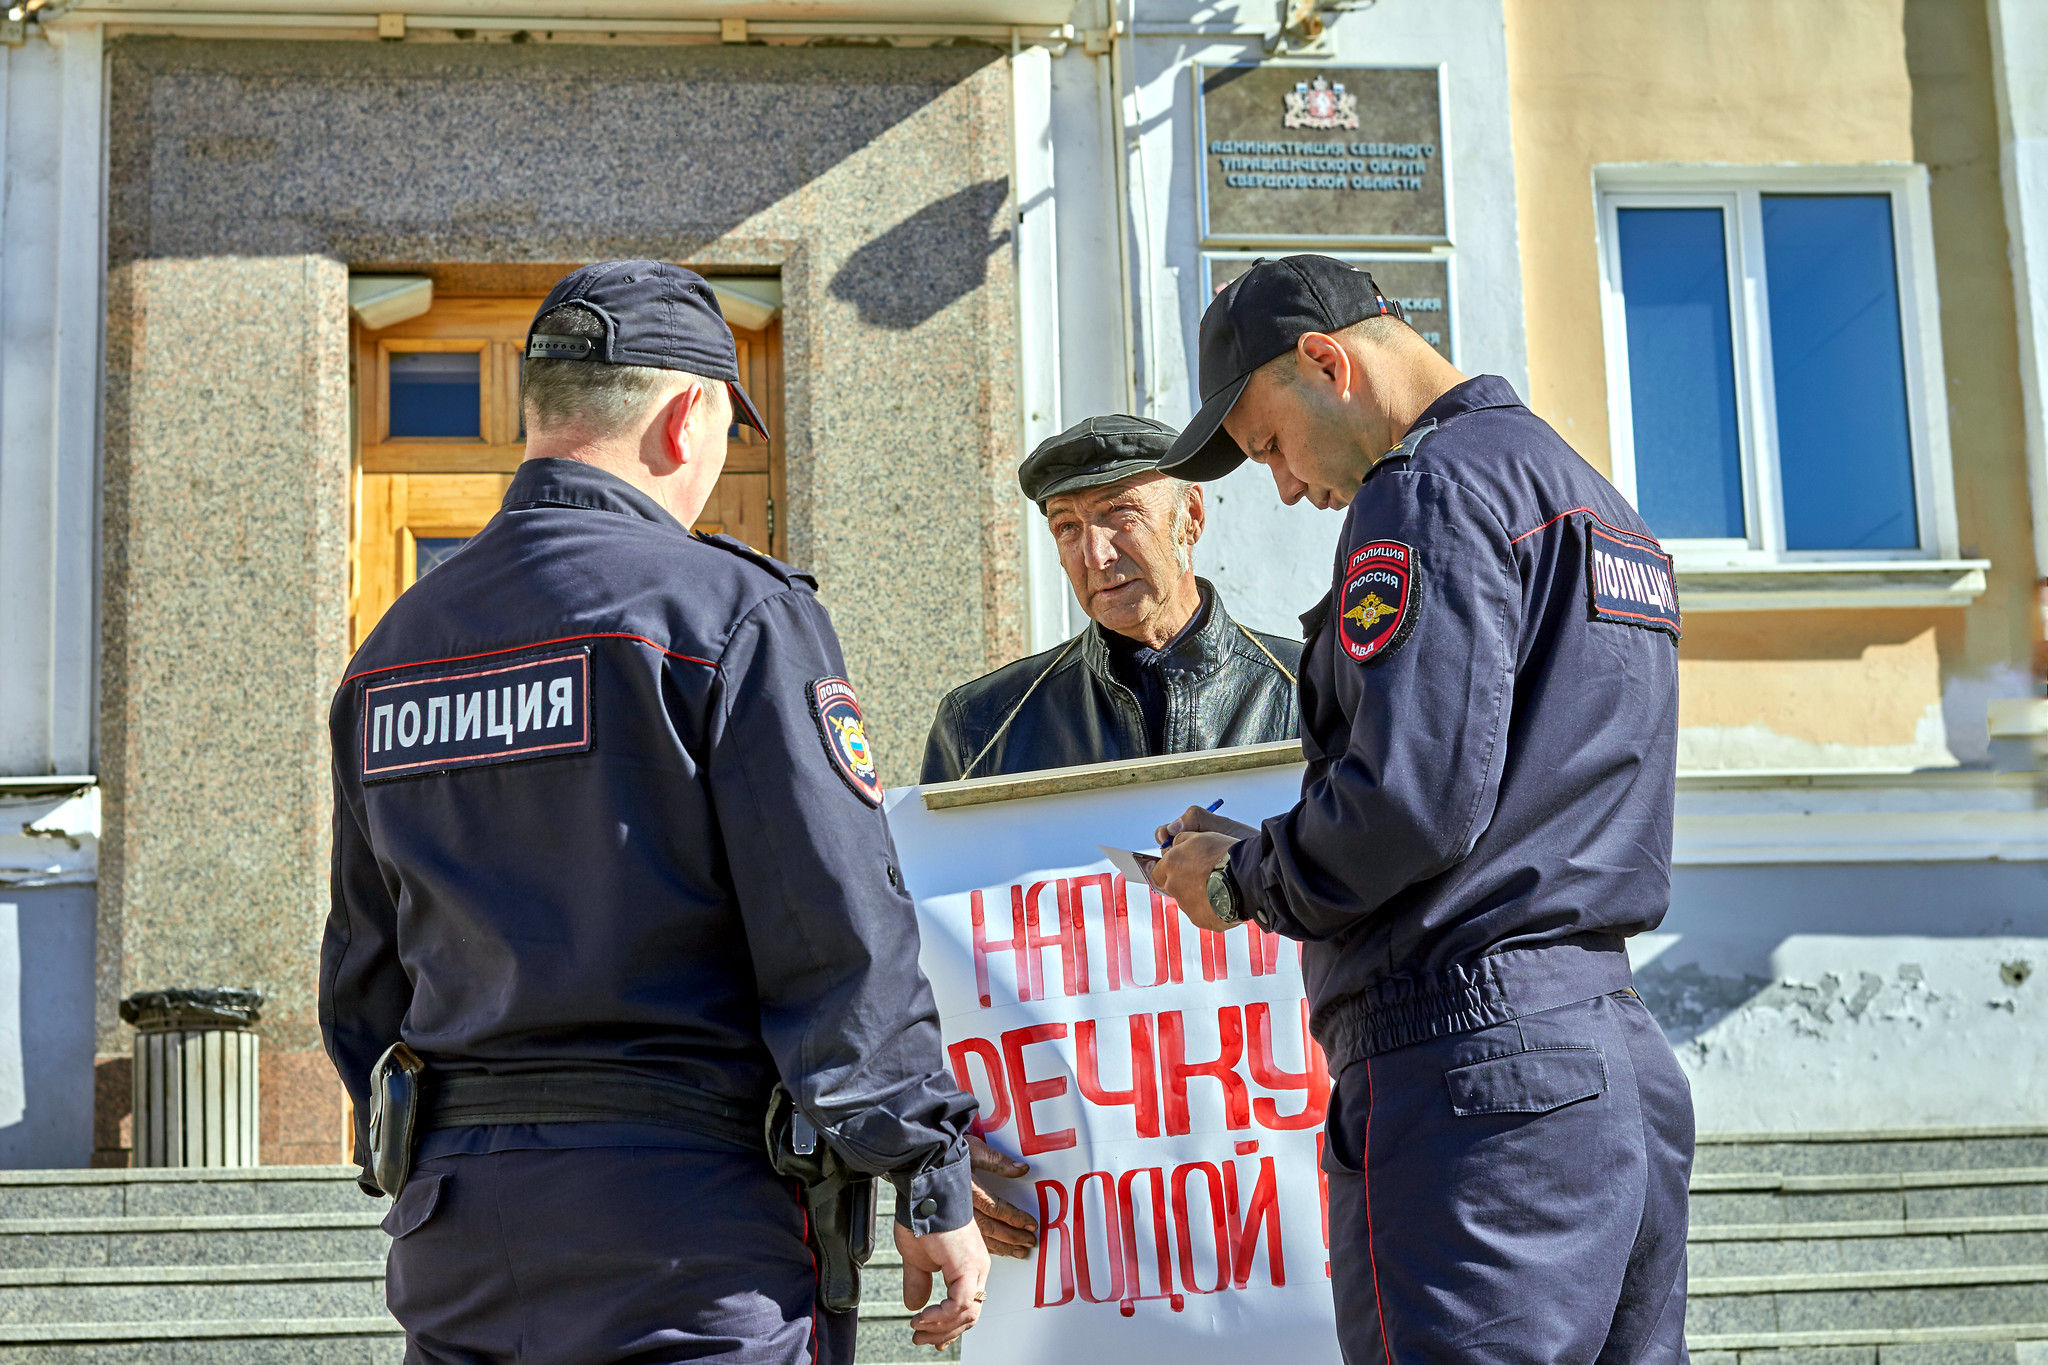 Карпинец провел два пикета в Краснотурьинске: как это было?